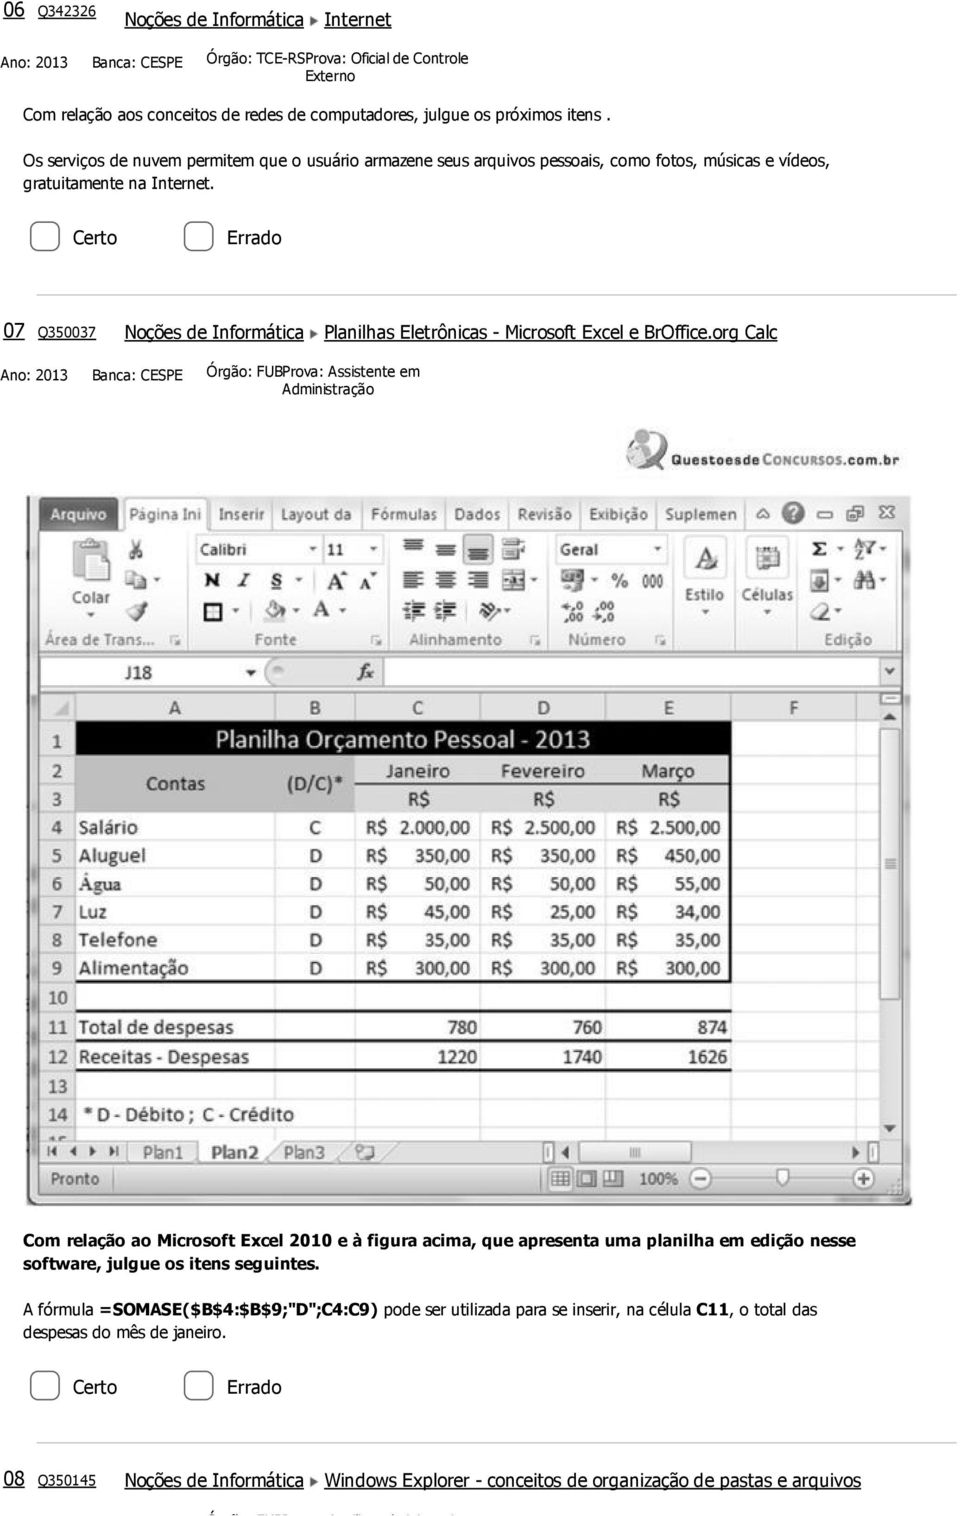 07 Q350037 Noções de Informática Planilhas Eletrônicas Microsoft Excel e BrOffice.